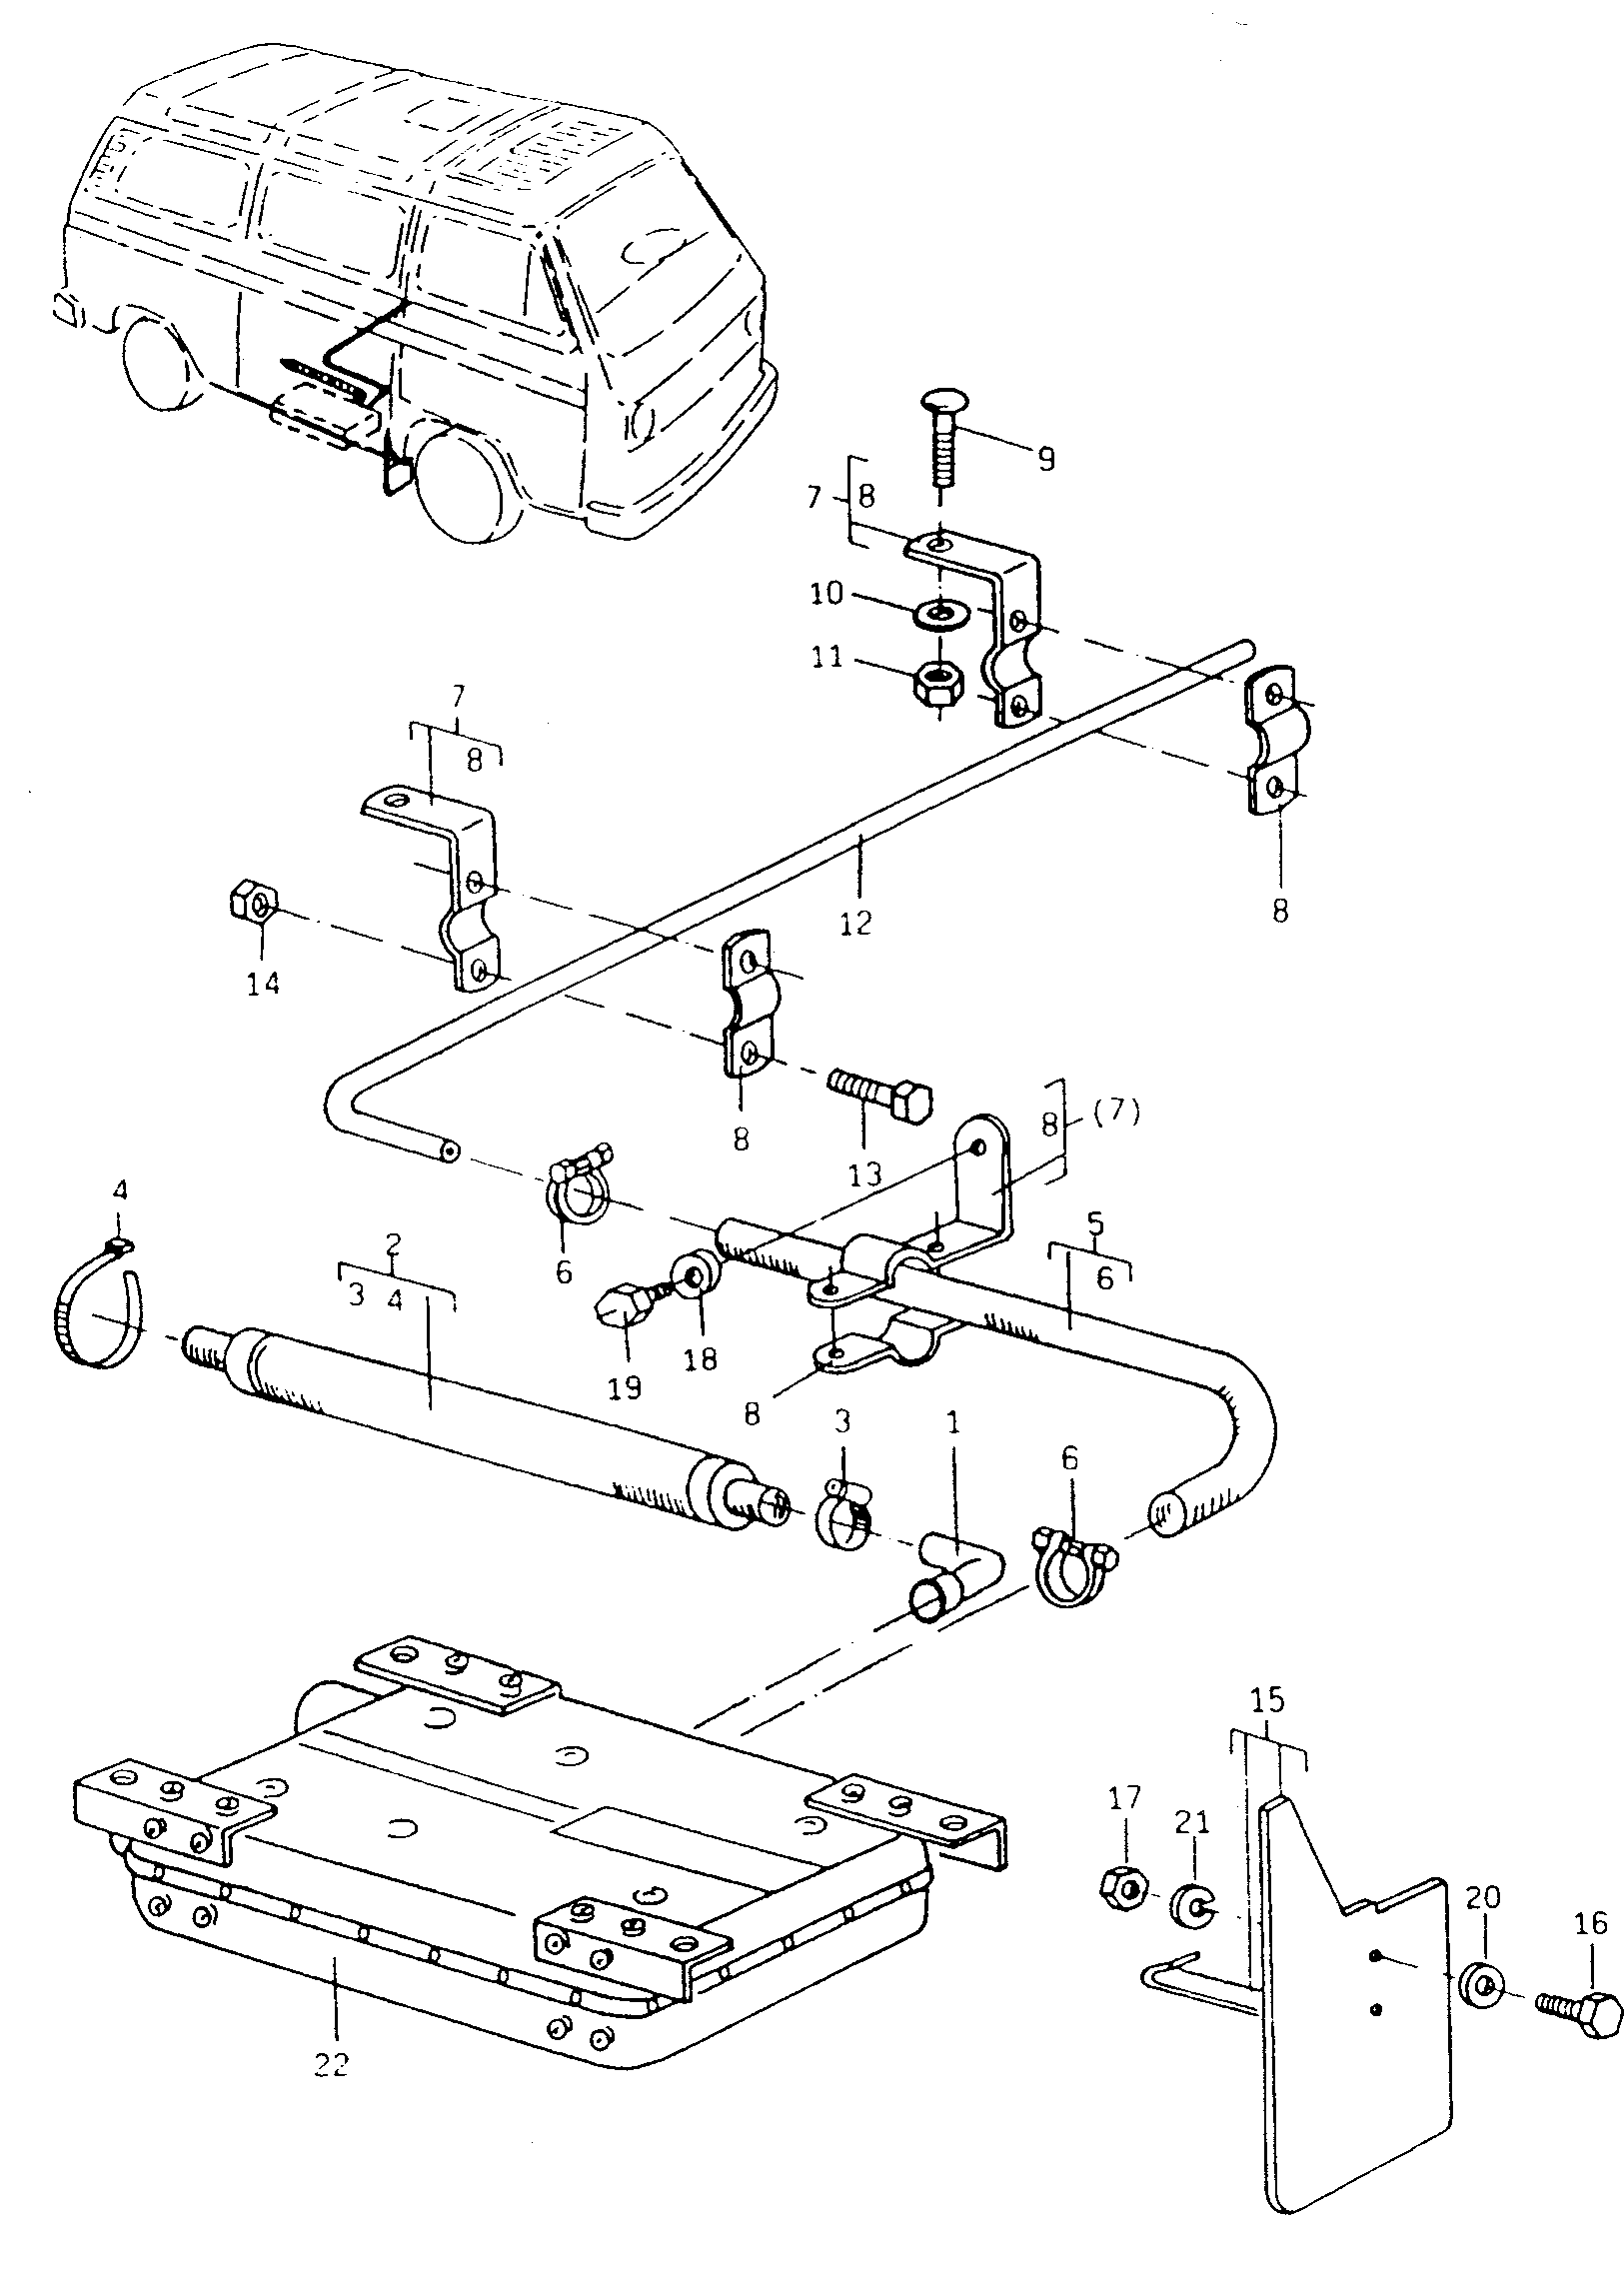 Schalldaempfer; Abgasrohr; Schmutzfaenger - Typ 2/syncro(T2)  